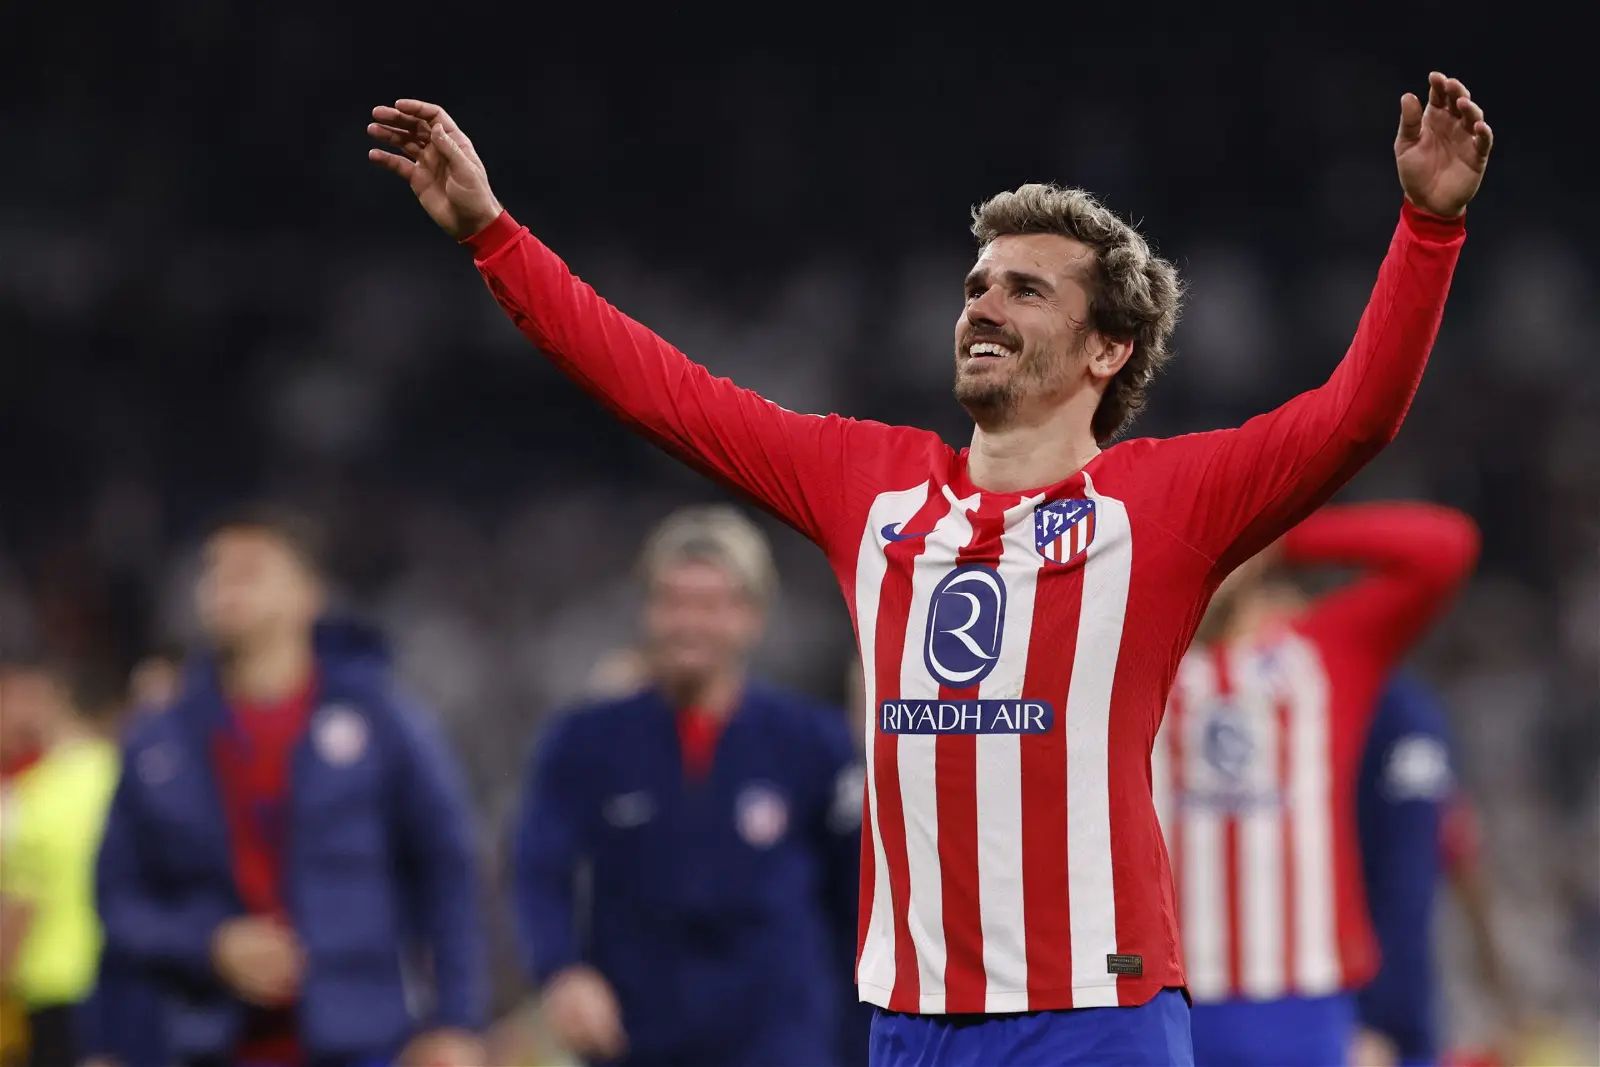 El Atlético de Madrid planea un nuevo contrato para el atacante